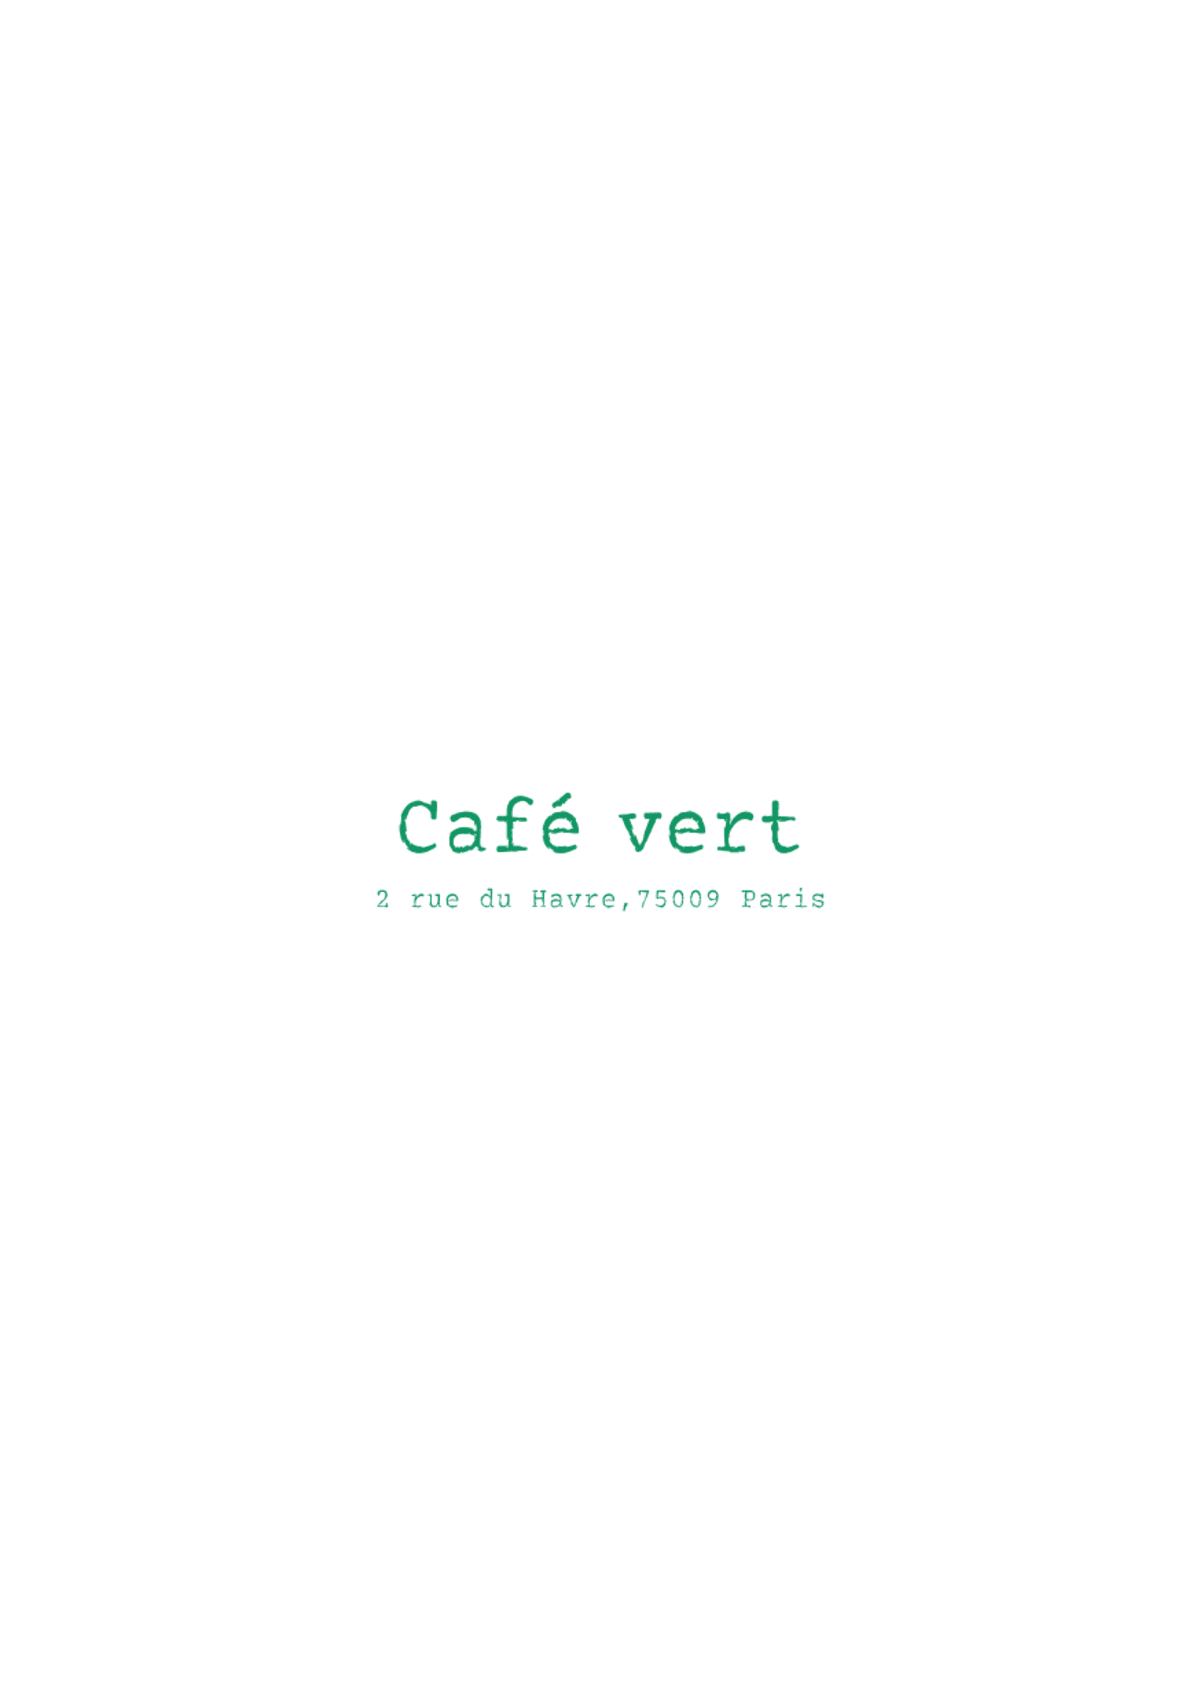 Le Café Vert menu